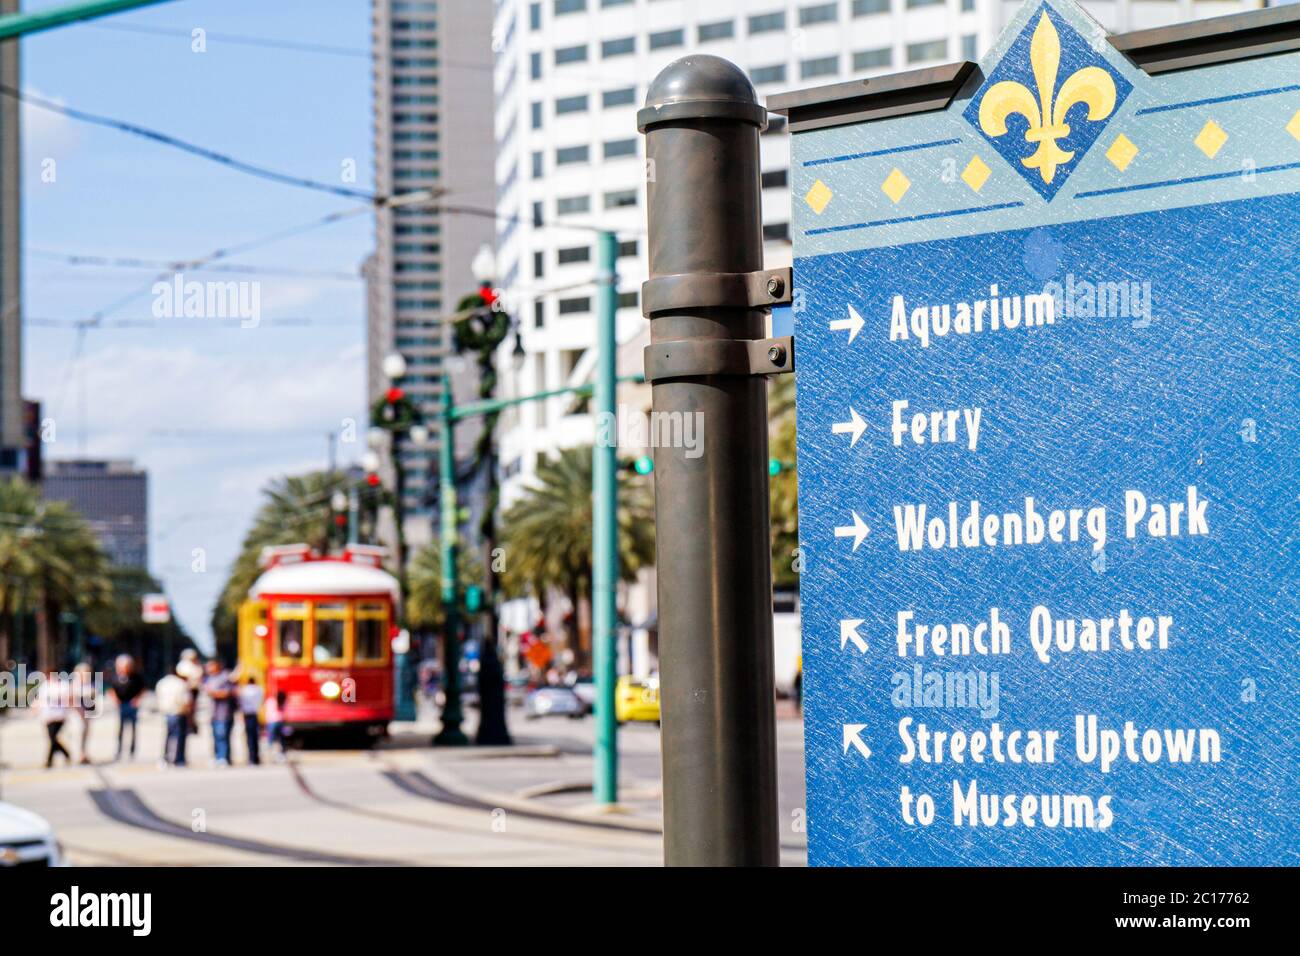 New Orleans Louisiana, Canal Street, escena de la calle, signo de dirección, fleur de lis, información, flecha, marca de la ciudad, acuario, ferry, Uptown, museos, Woldenberg P Foto de stock